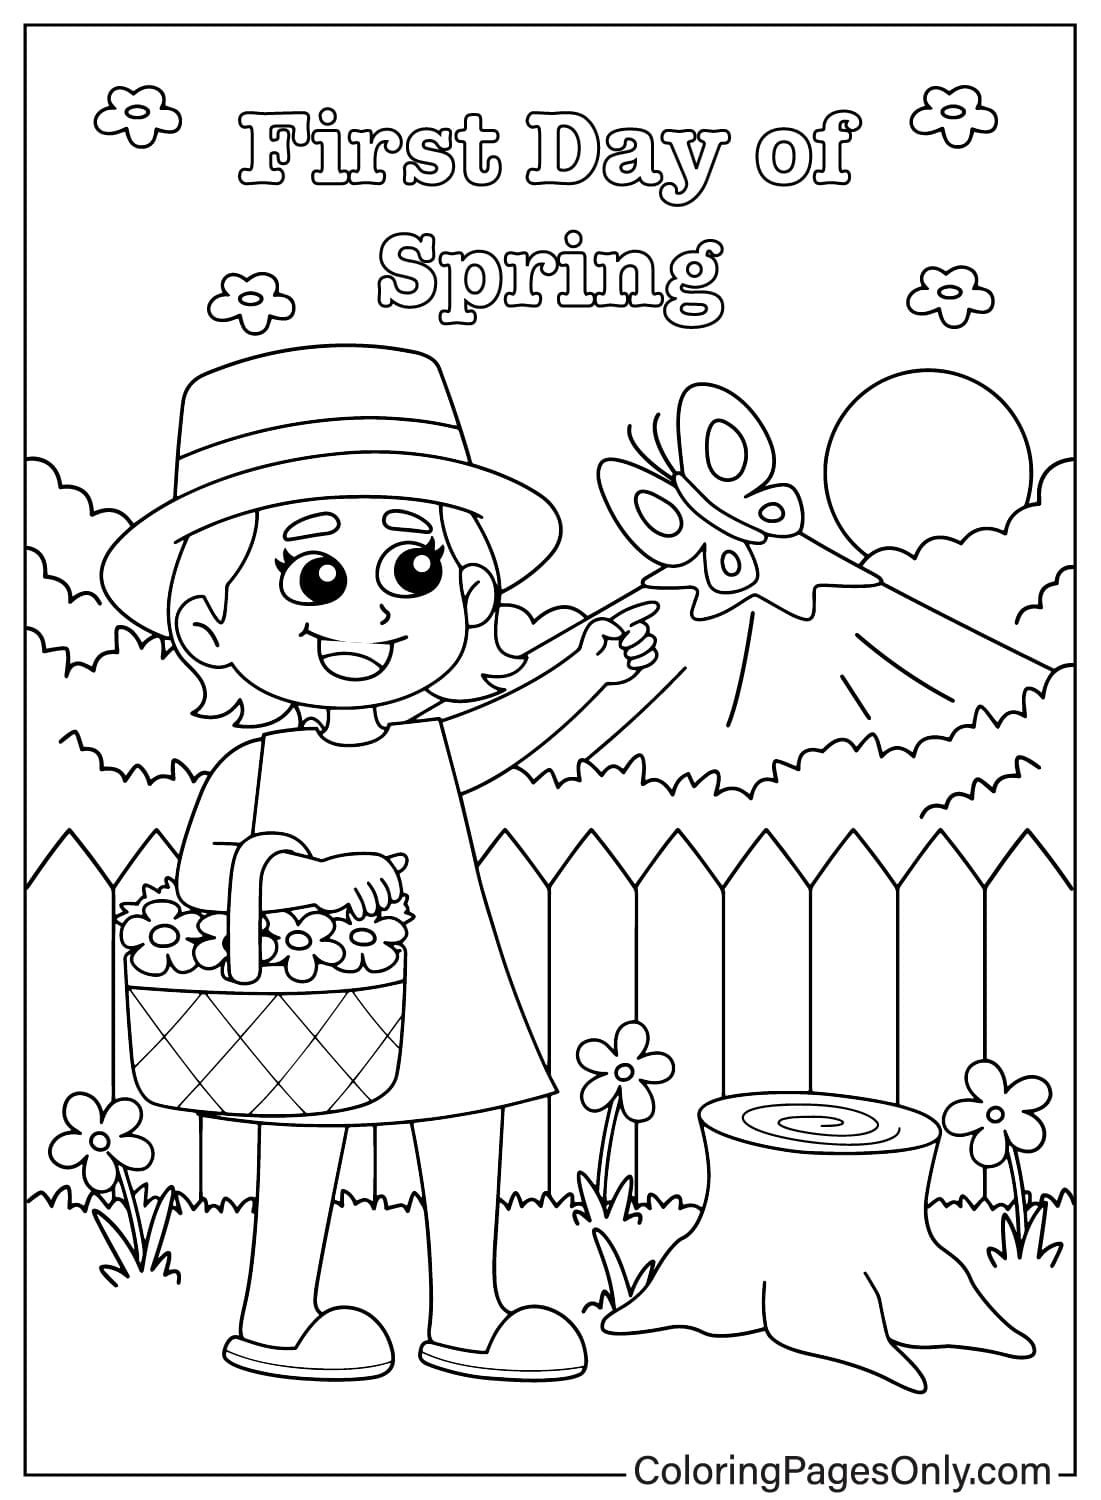 Página para colorear de niña del primer día de primavera de Primer día de primavera